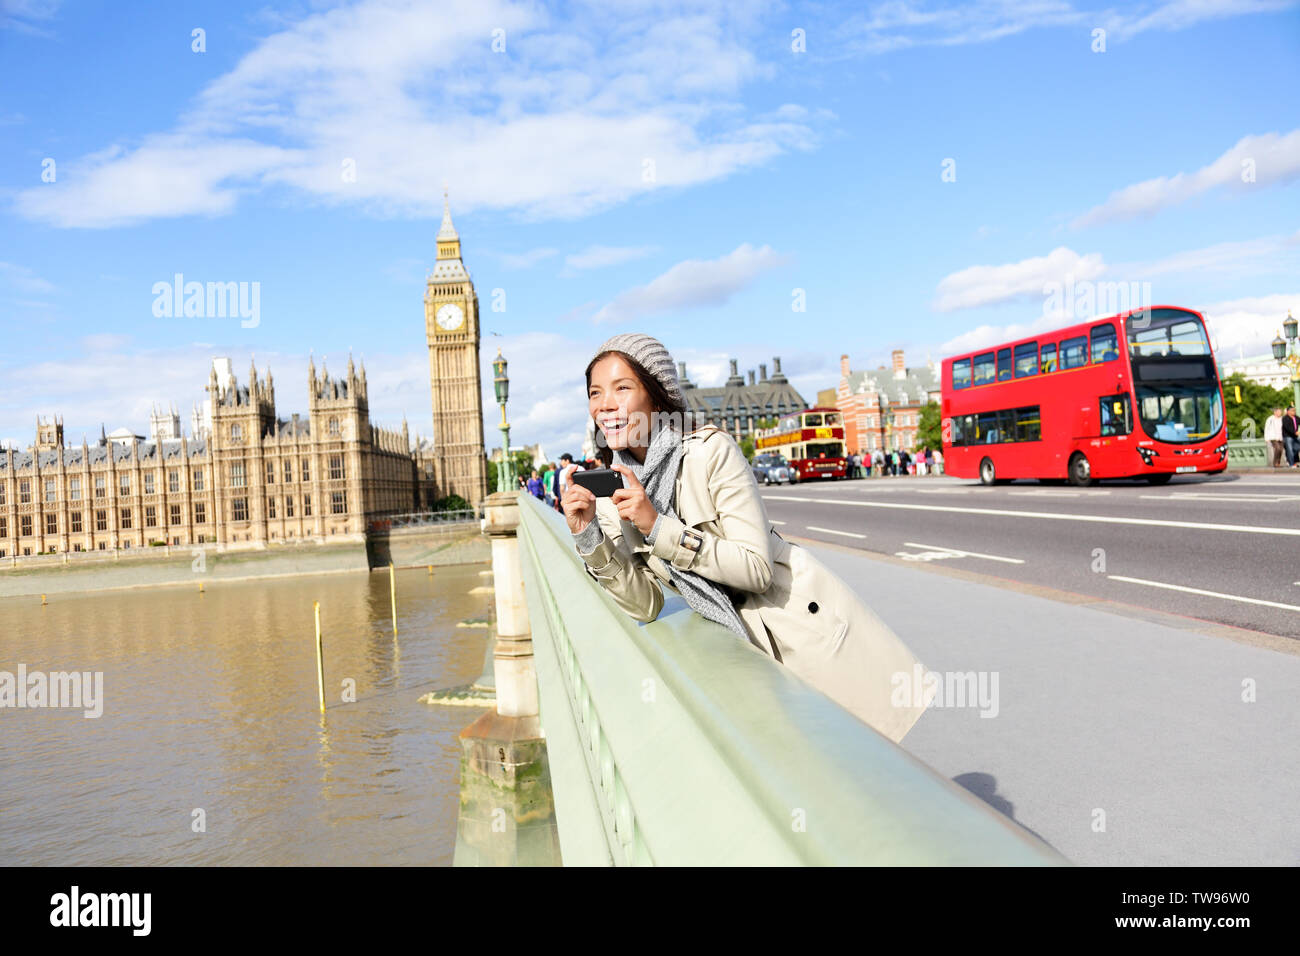 London reisen, Frau touristische von Big Ben und roten Doppeldeckerbusses. Mädchen mit Foto auf die Westminster Bridge mit smart phone Kamera über die Themse, London, England, Großbritannien, Großbritannien. Stockfoto